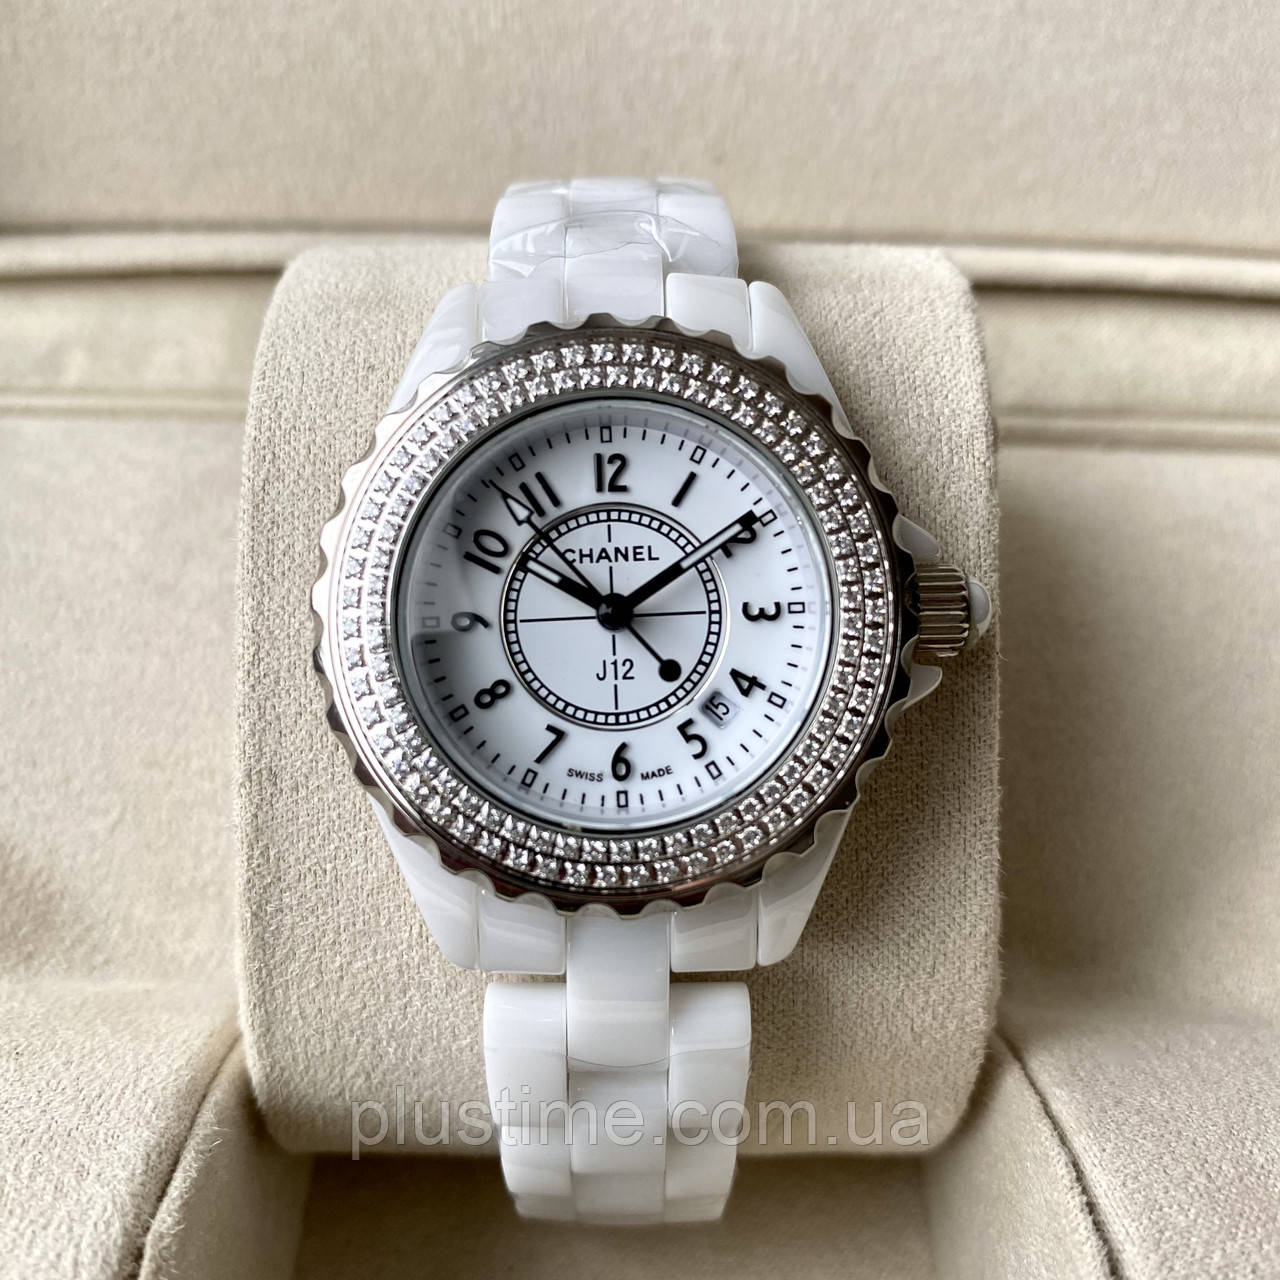 Купить женские часы Chanel Vintage в интернетмагазине Lookbuck